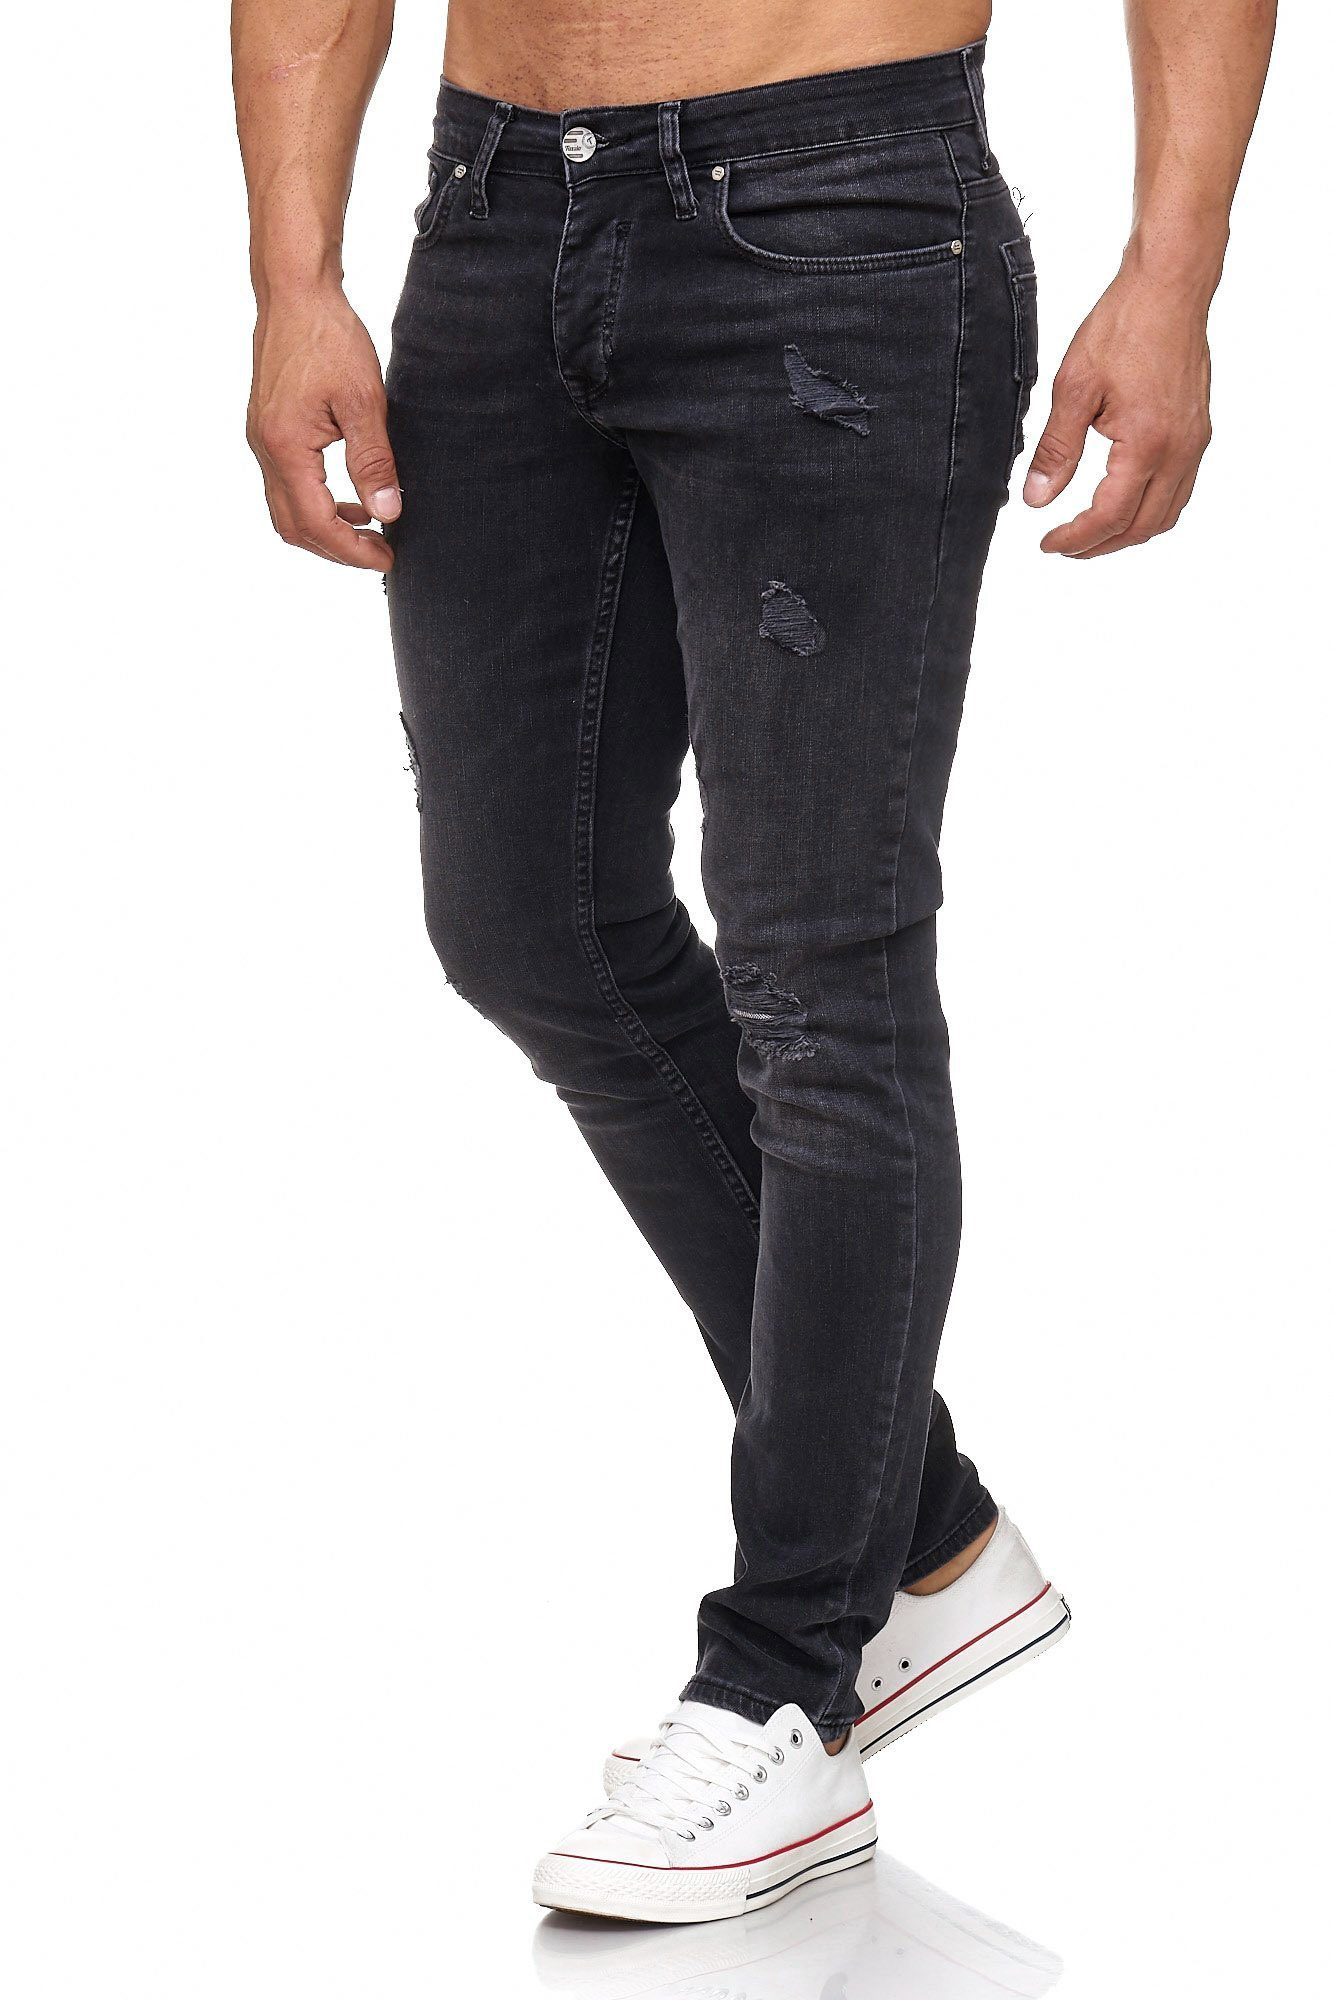 Tazzio Slim-fit-Jeans 17502 im Destroyed-Look schwarz